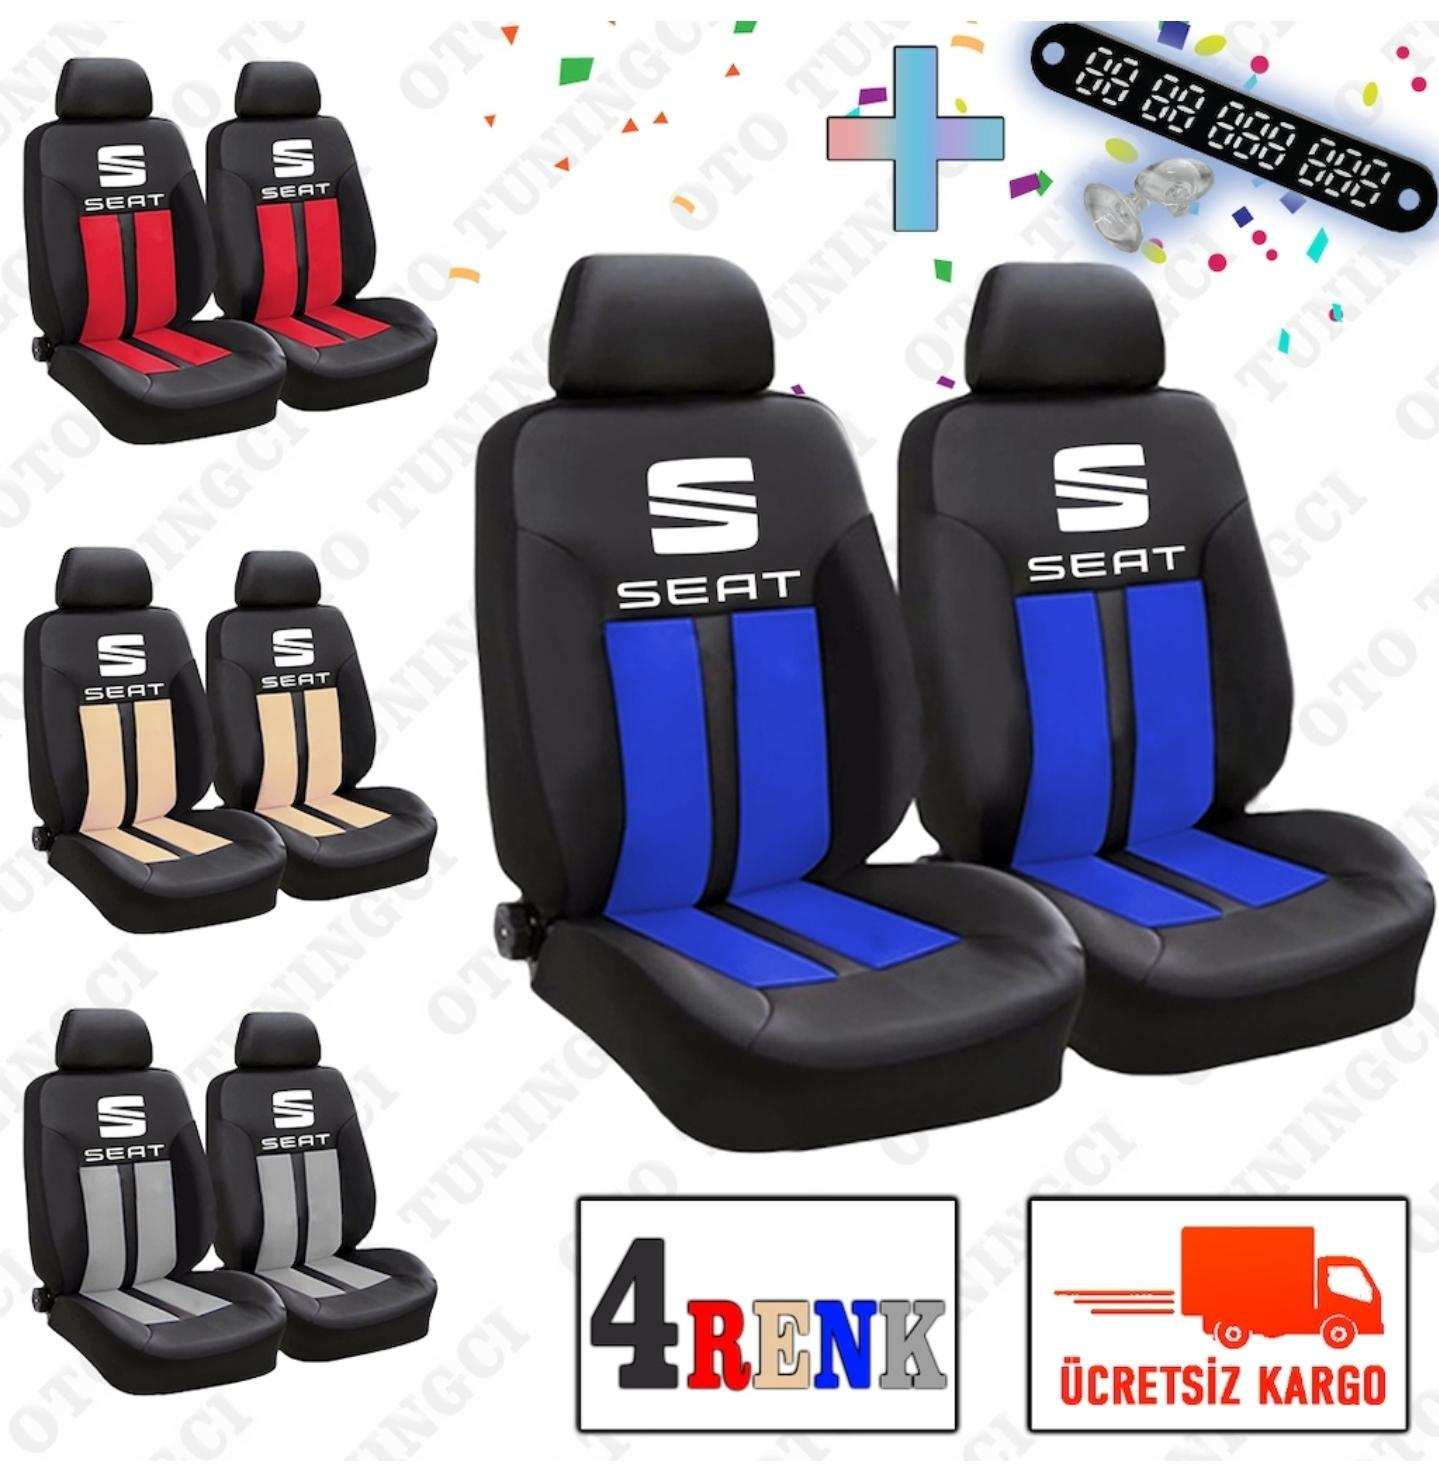 Seat SPOR Şeritli Arka Kılıf Dahil Oto Koltuk Kılıfı Set + Numaramatik